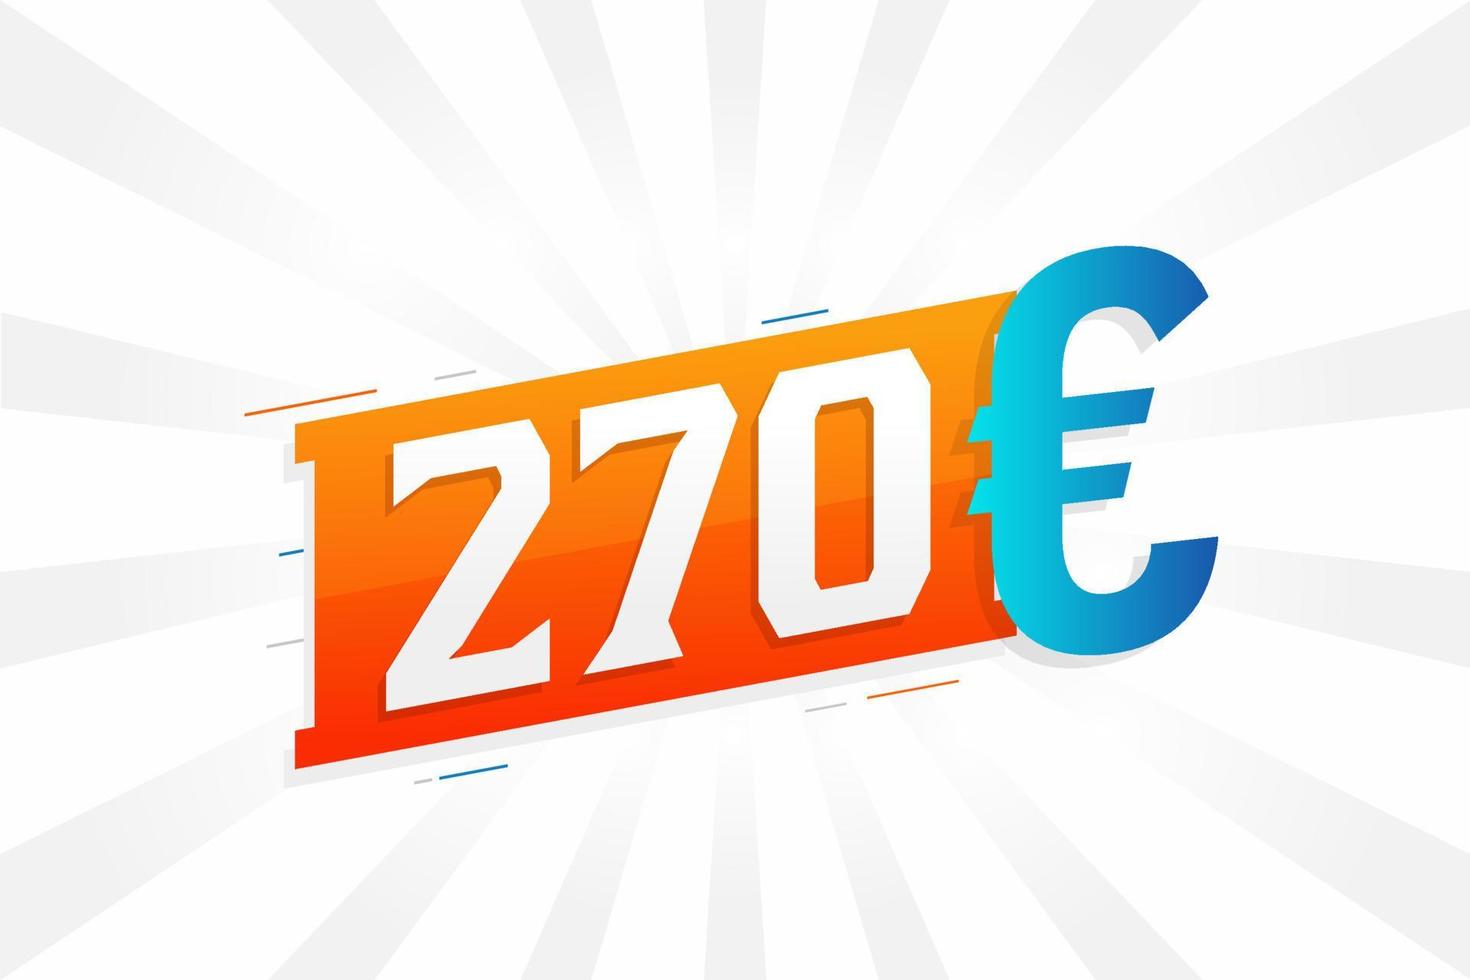 270 euro valuta vector tekst symbool. 270 euro Europese unie geld voorraad vector